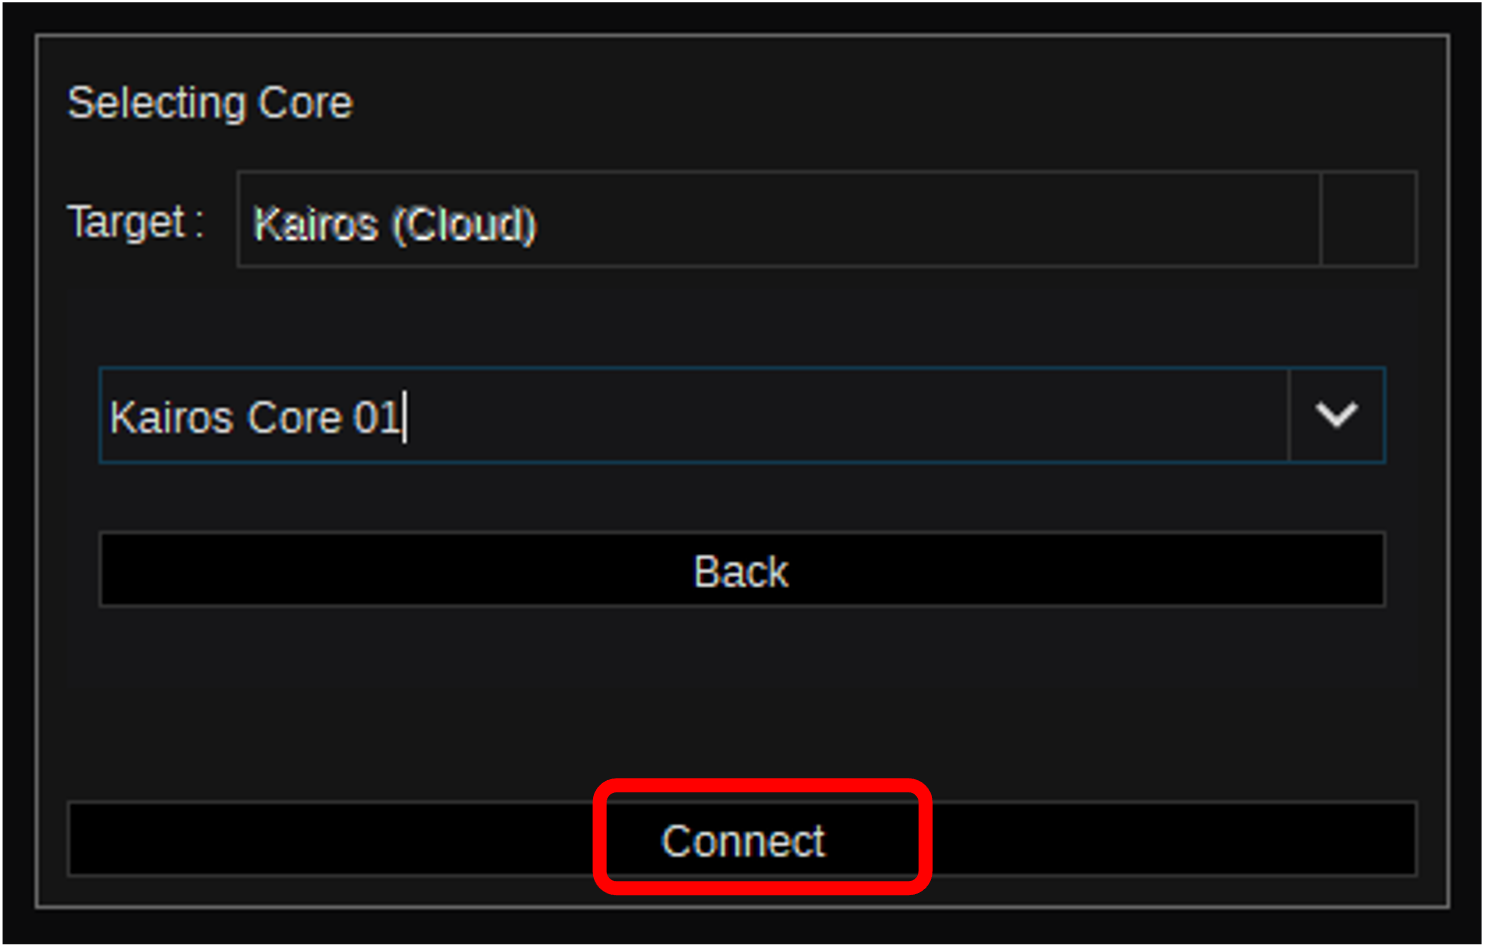 5 接続するKairos Coreを選択し、［Connect］をクリックする